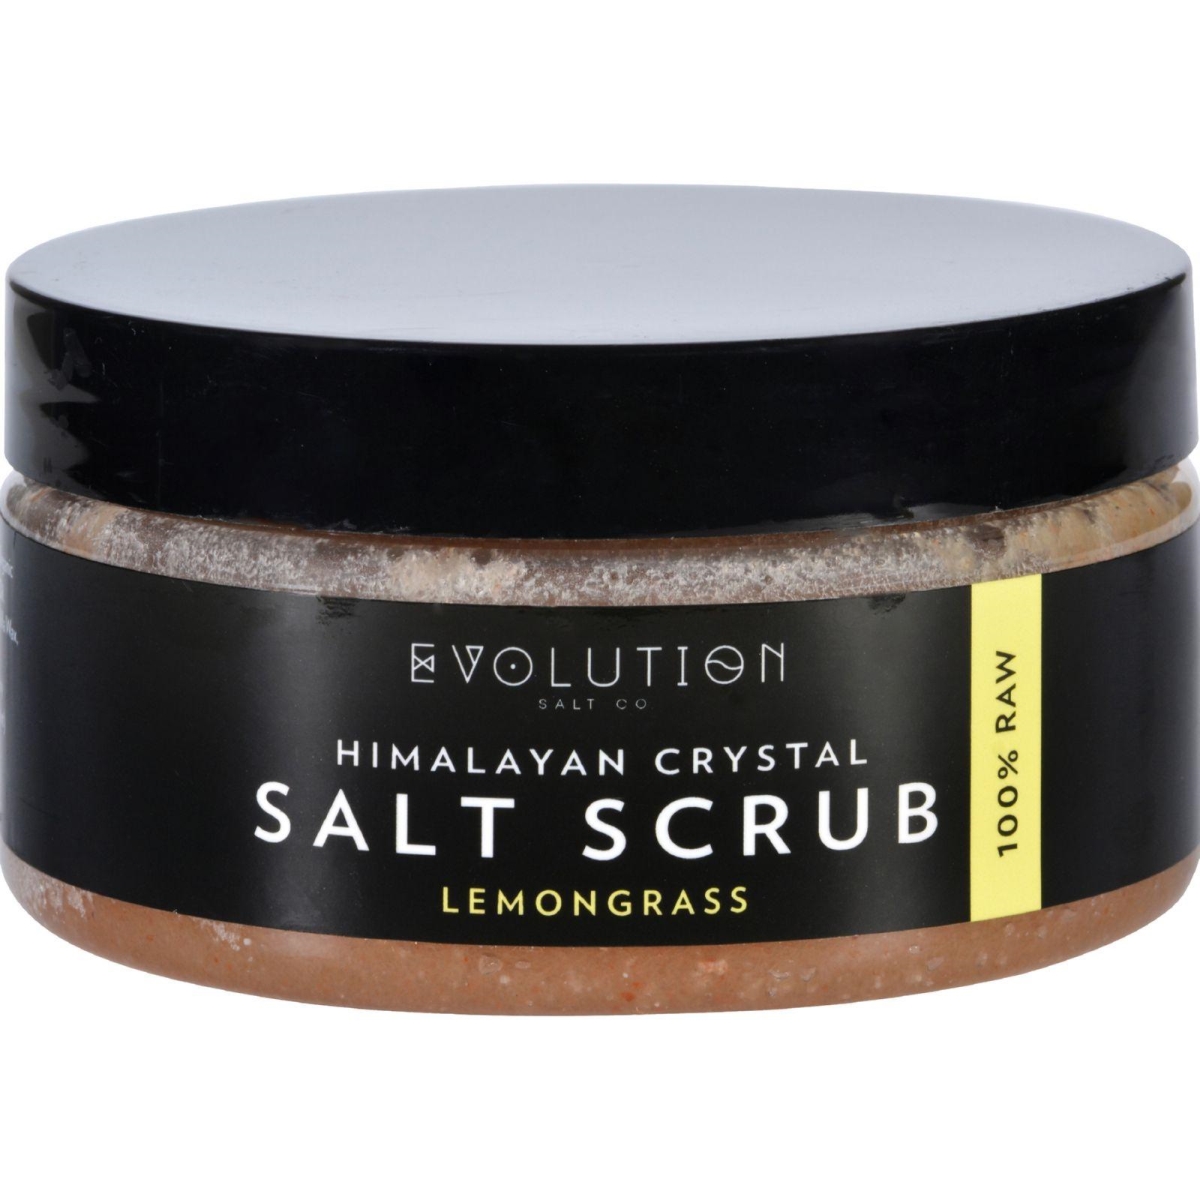 Hg1702372 12 Oz Himalayan Salt Scrub, Lemongrass